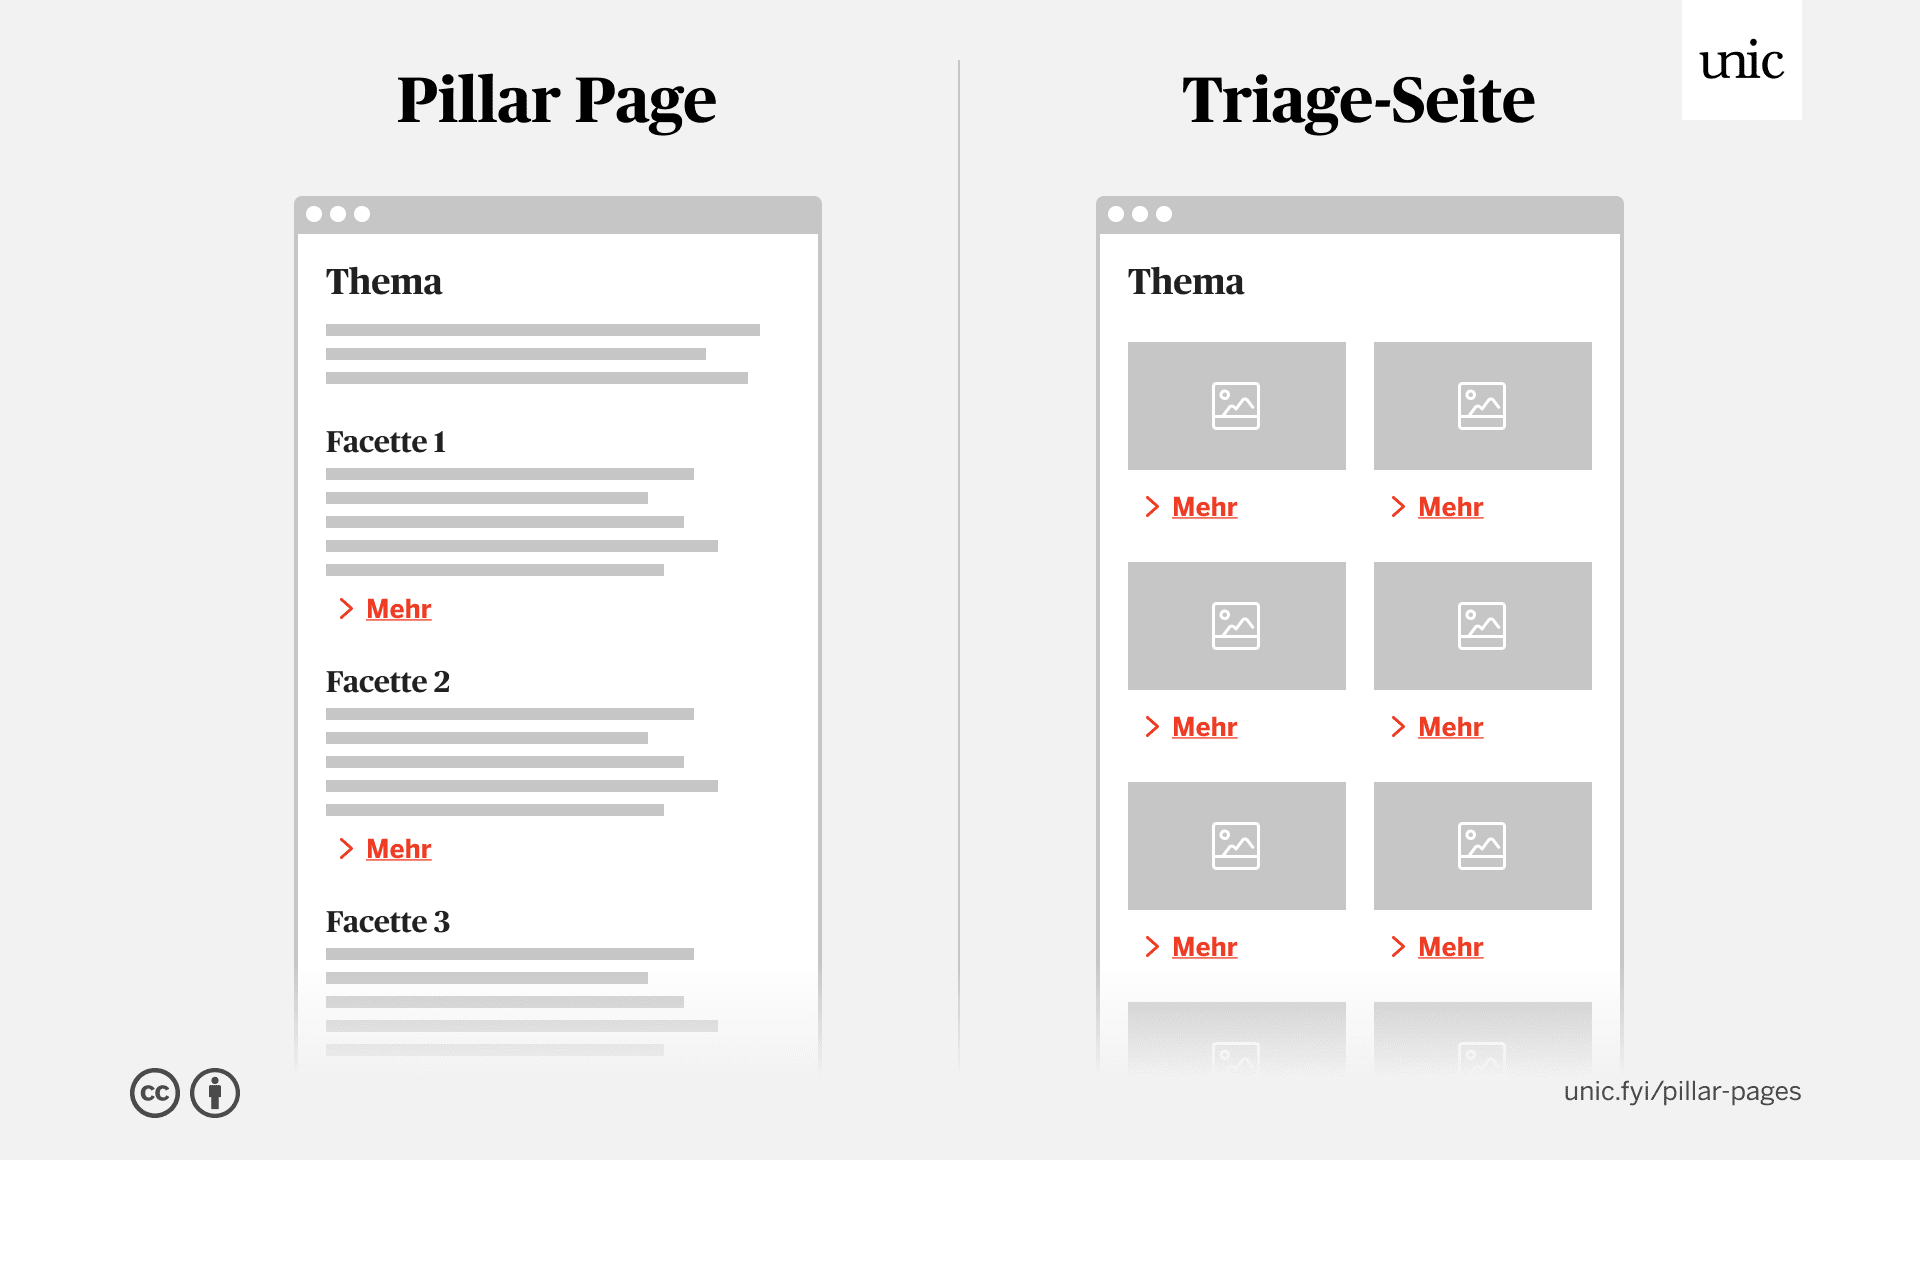 Eine Pillar Page im Vergleich zu einer Triage-Seite